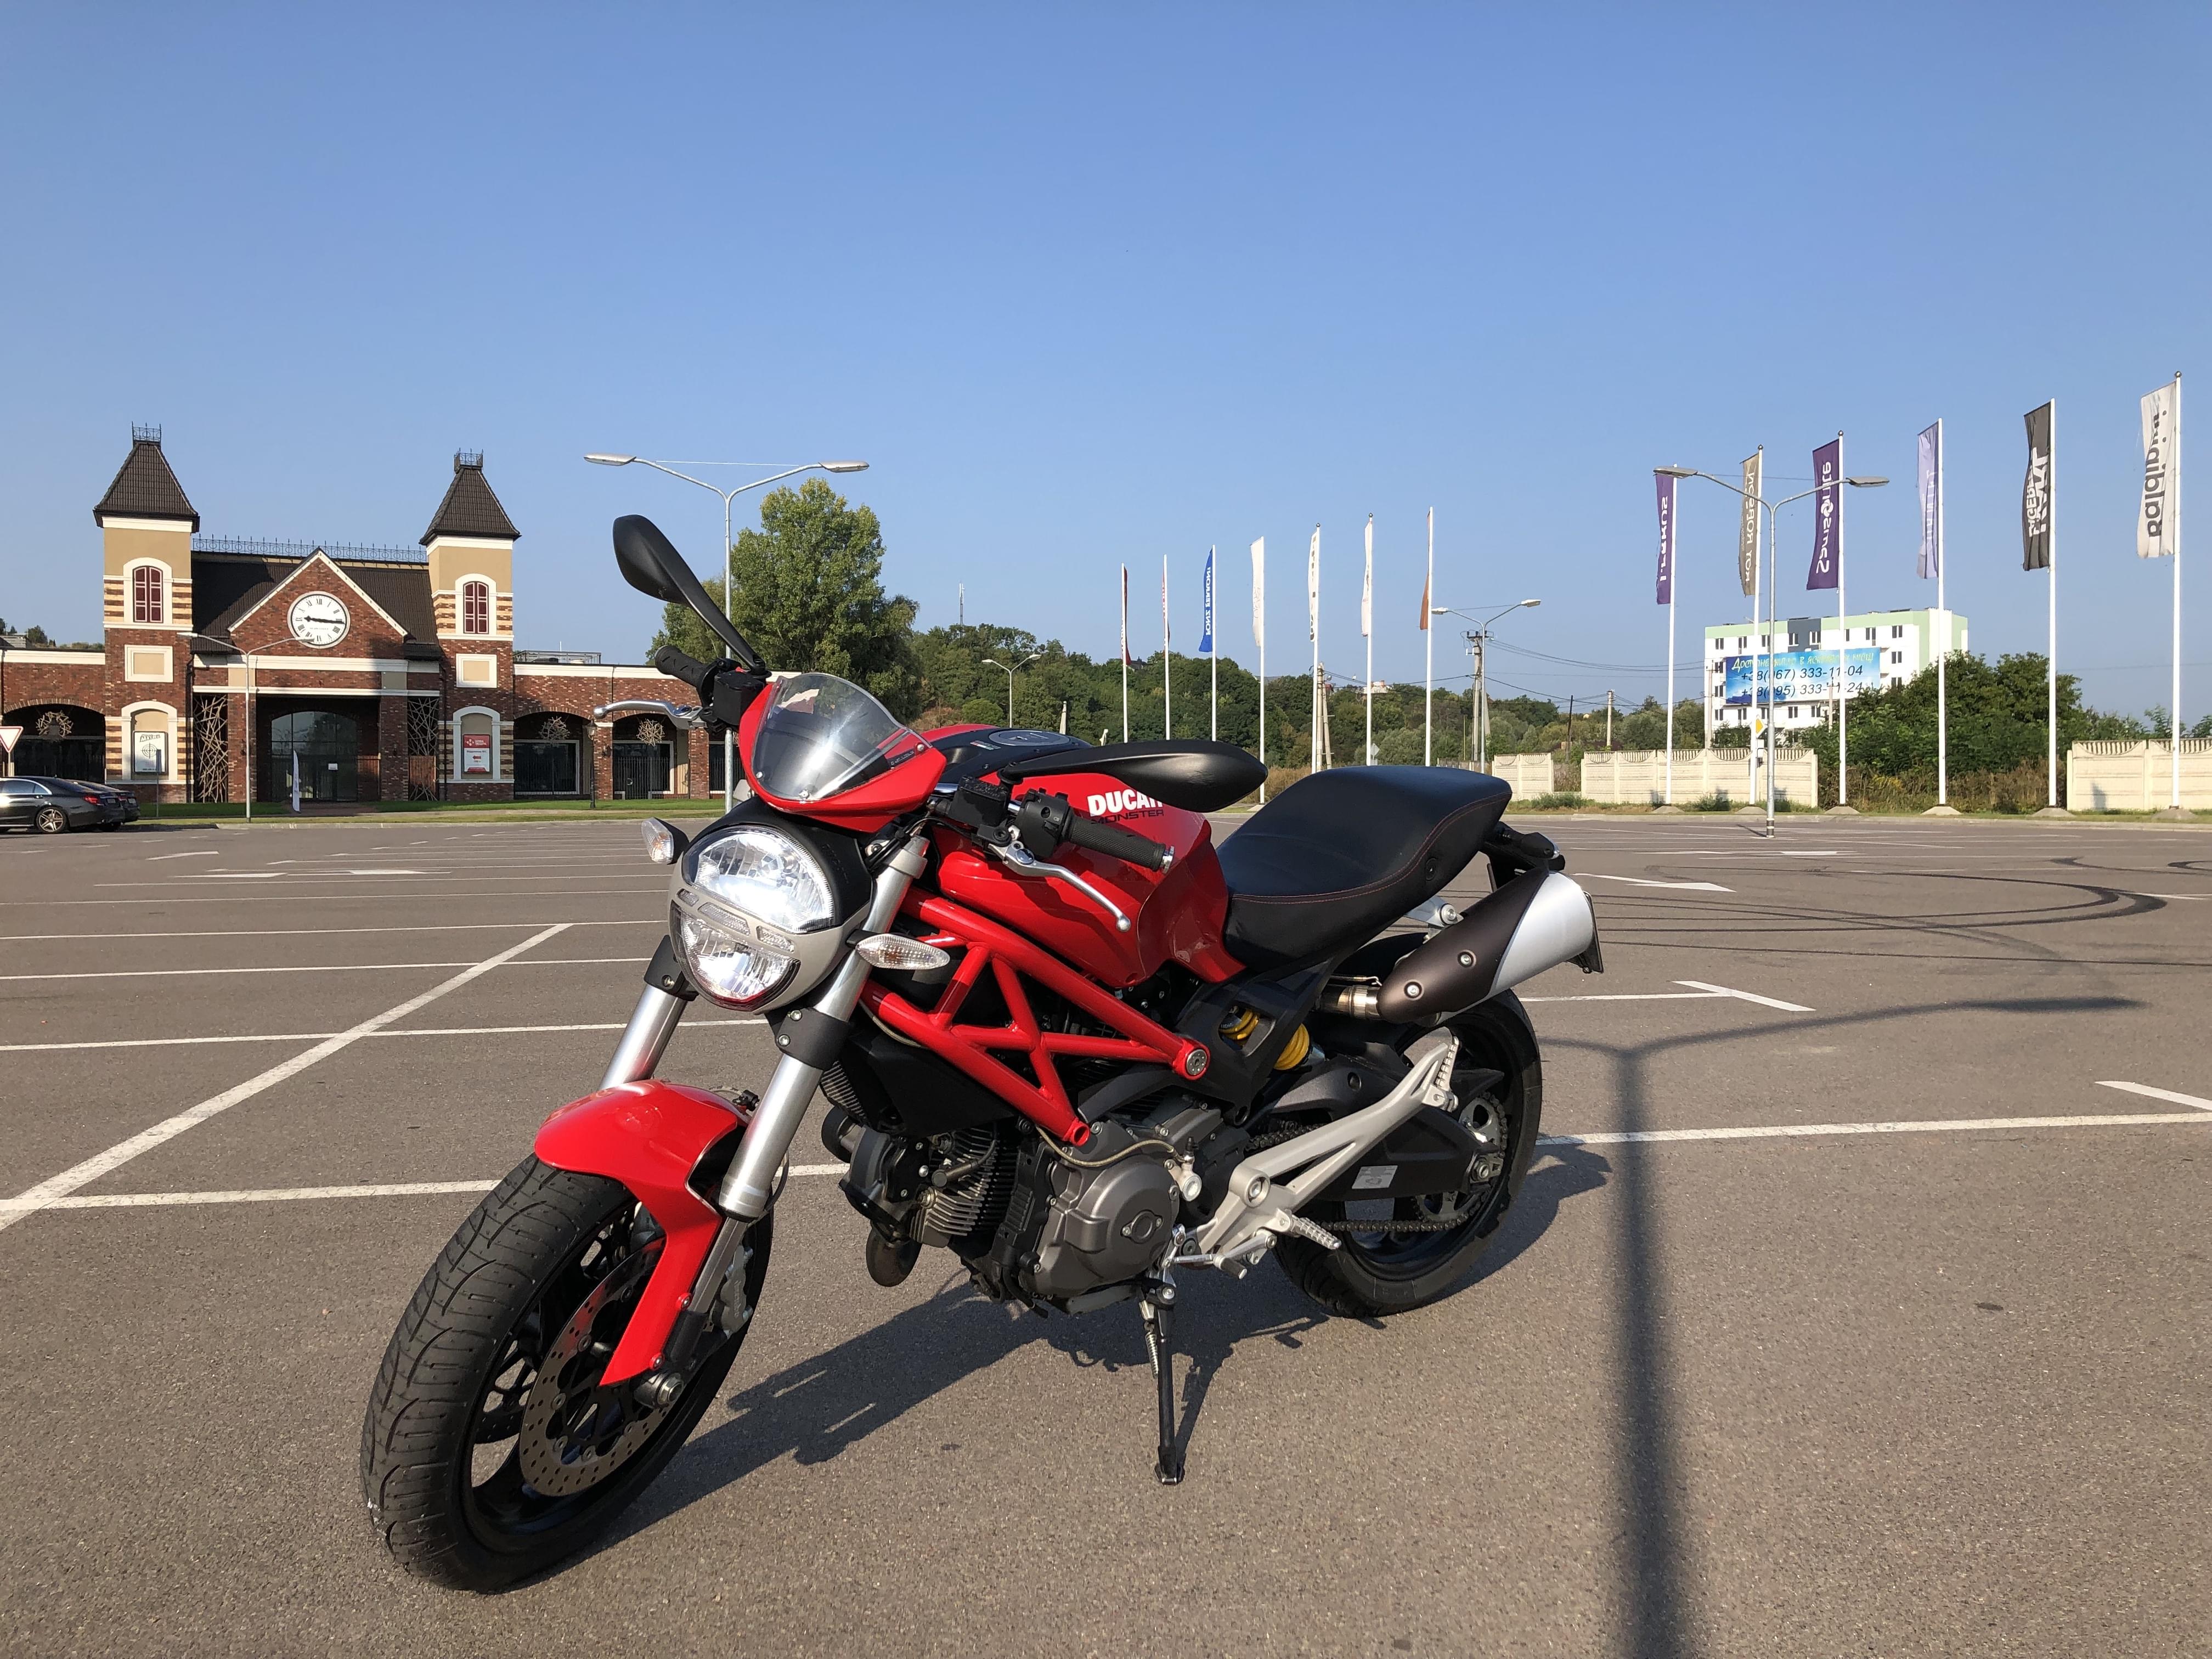 Ducati Monster 696 for rental